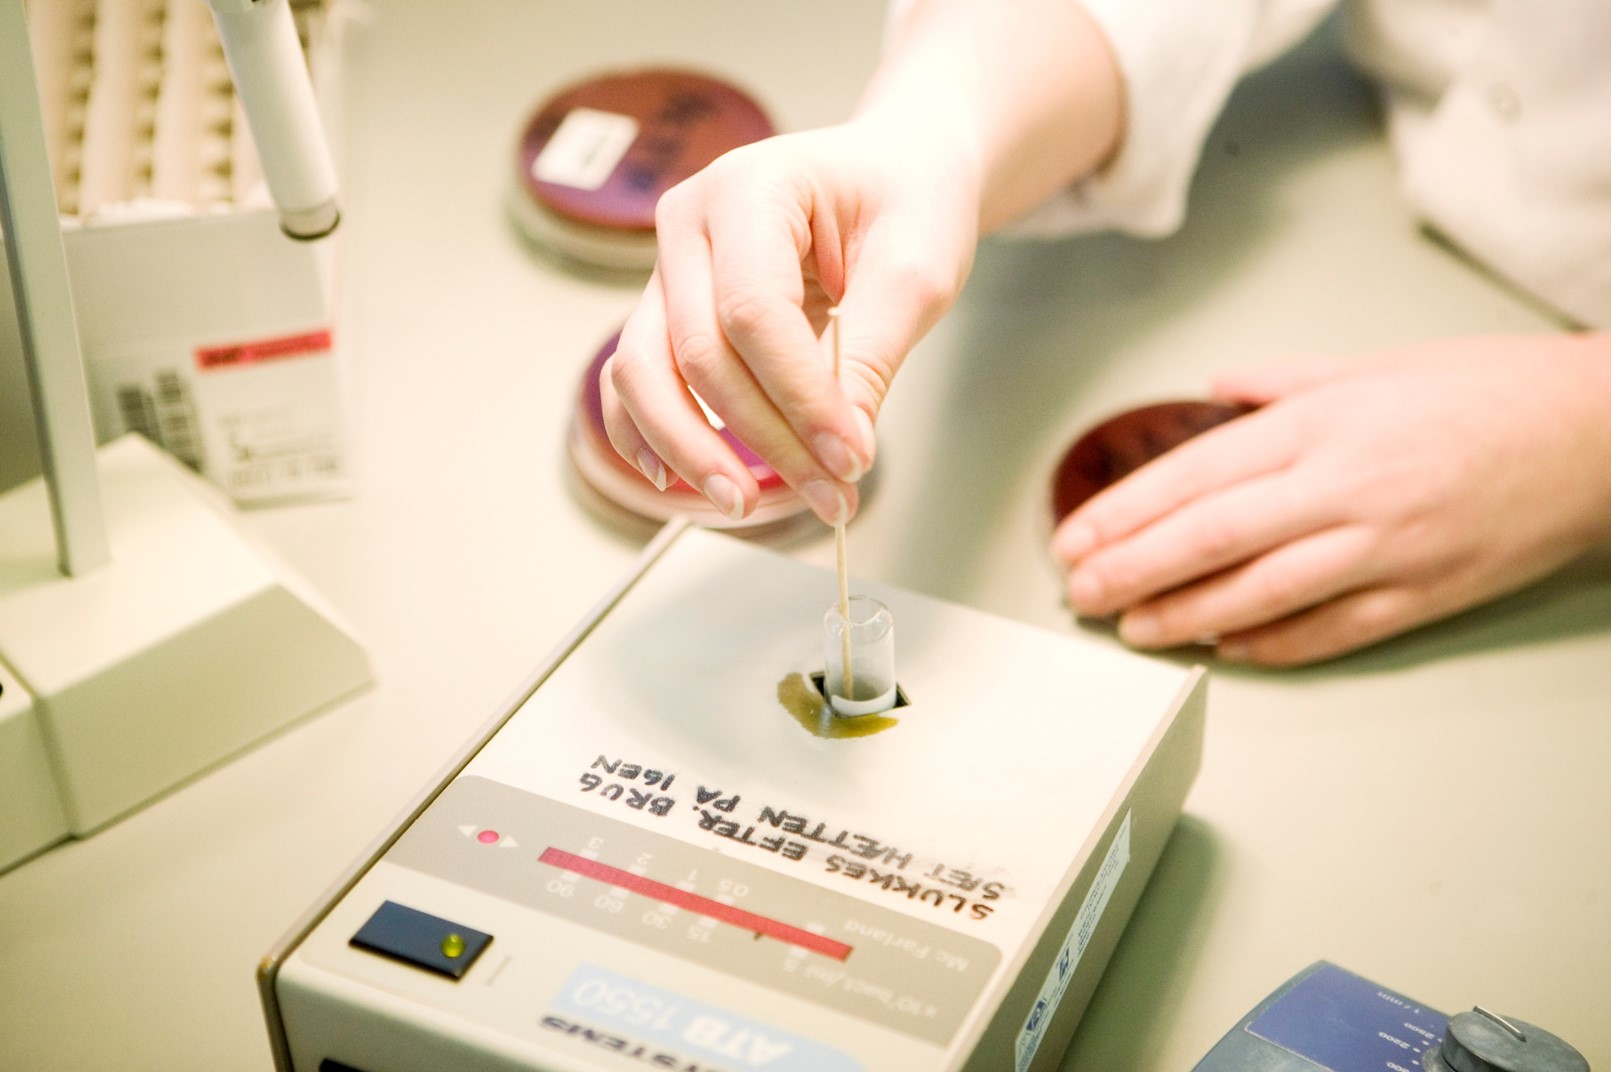 Behandling af mikrobiologisk prøve i apparat